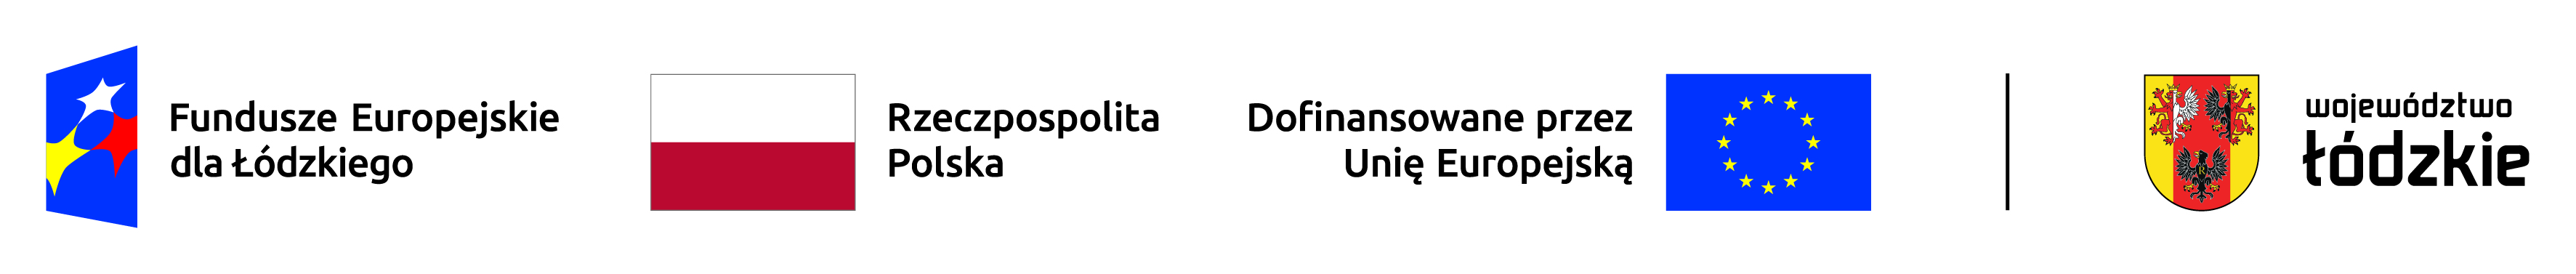 Logotyp promujący projekt Aktywizacja osób bezrobotnych z powiatu poddębickiego (I). przedstawia kolejno od lewej strony logo Fundusze Europejskie dla Łódzkiego, Flaga Rzeczpospolita Polska, Flaga Unii Europejskiej z podpisem Dofinansowane przez Unię Europejską pionową kreskę i za nią na końcu po prawej stronie herb województwa łódzkiego z podpisem Województwo łódzkie